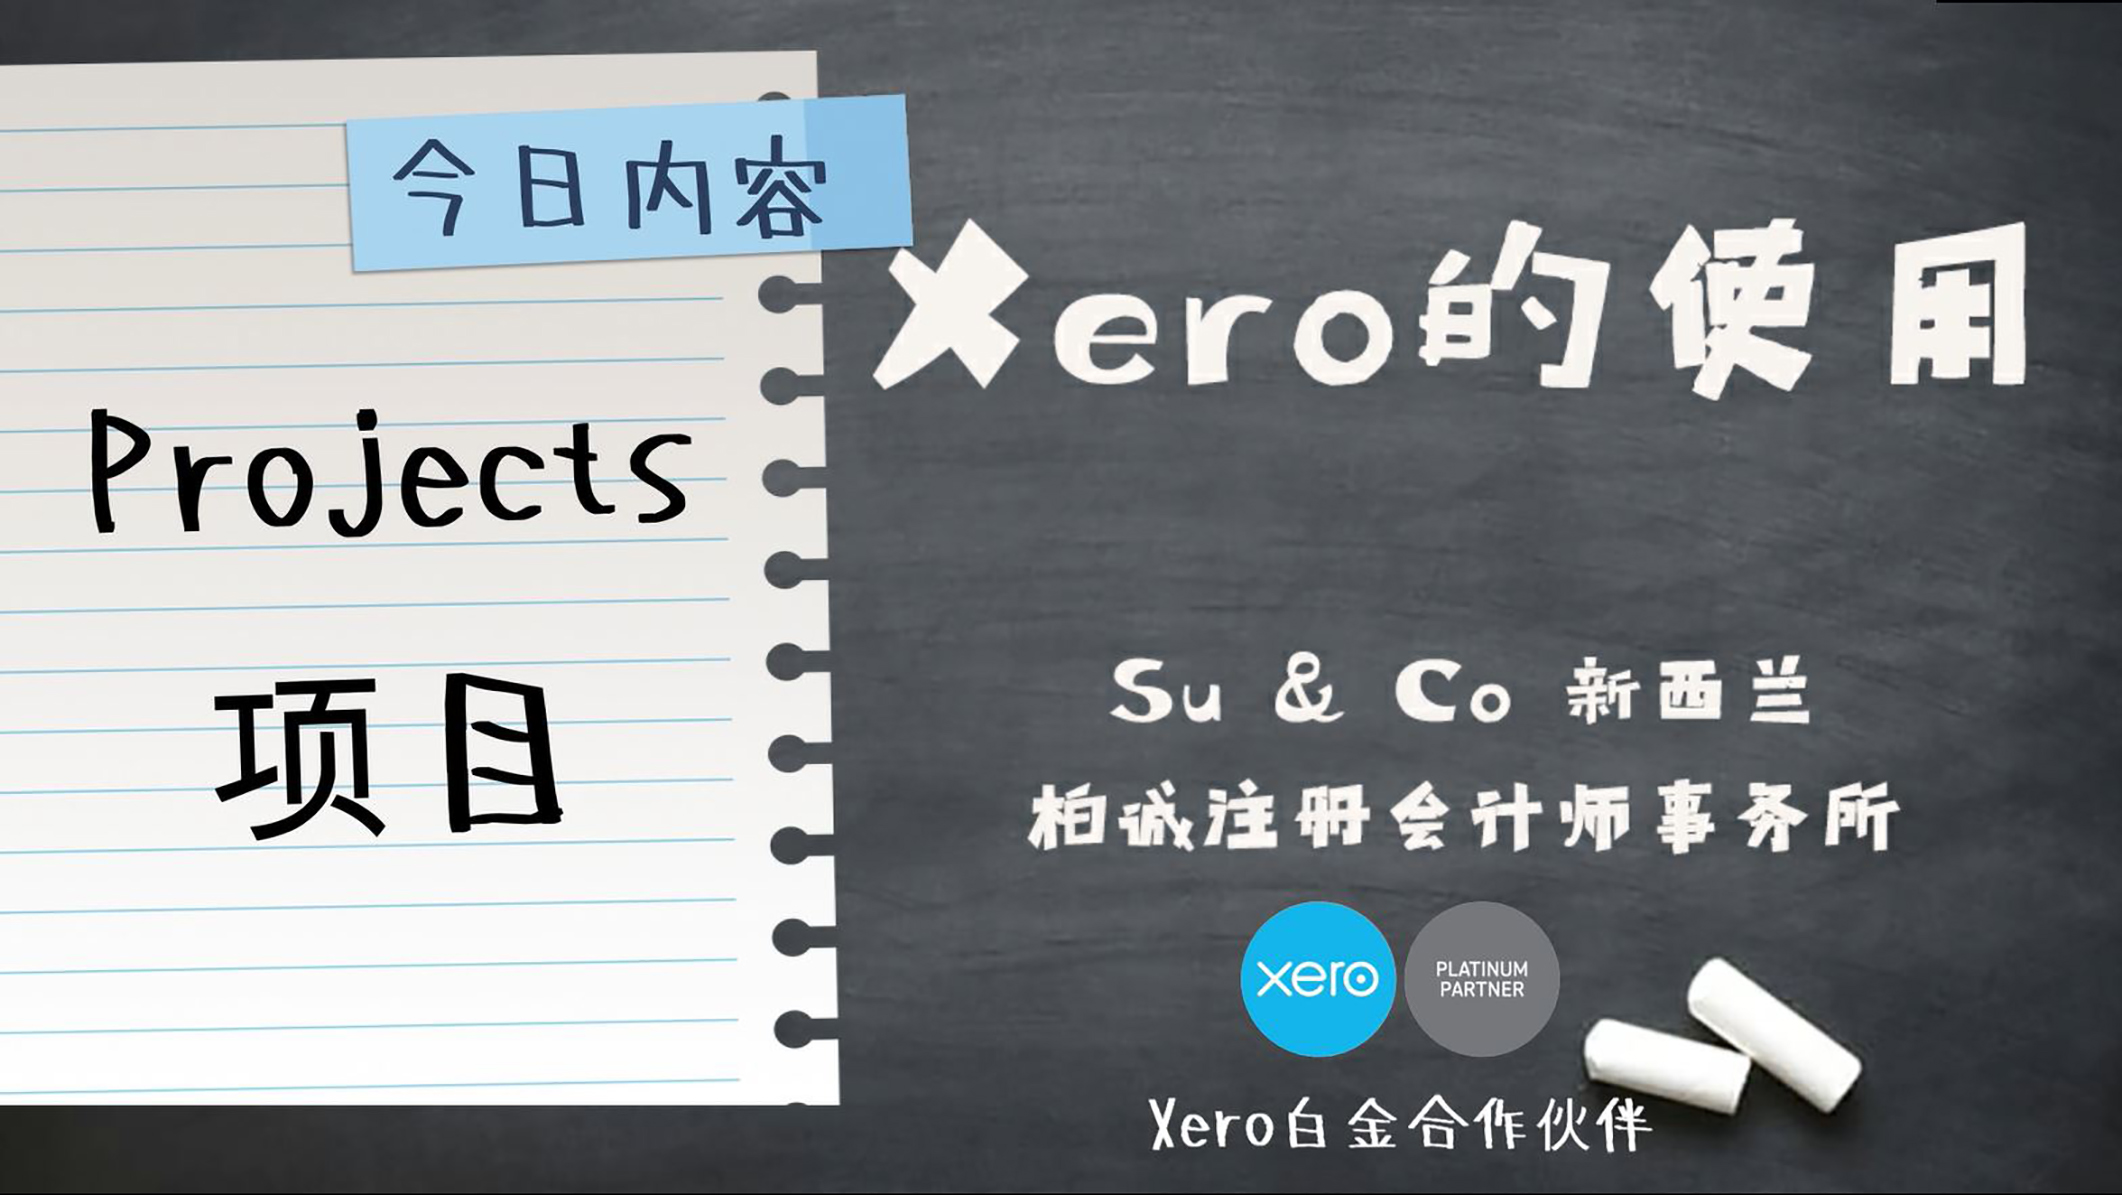 Xero的使用教程 - Projects 项目